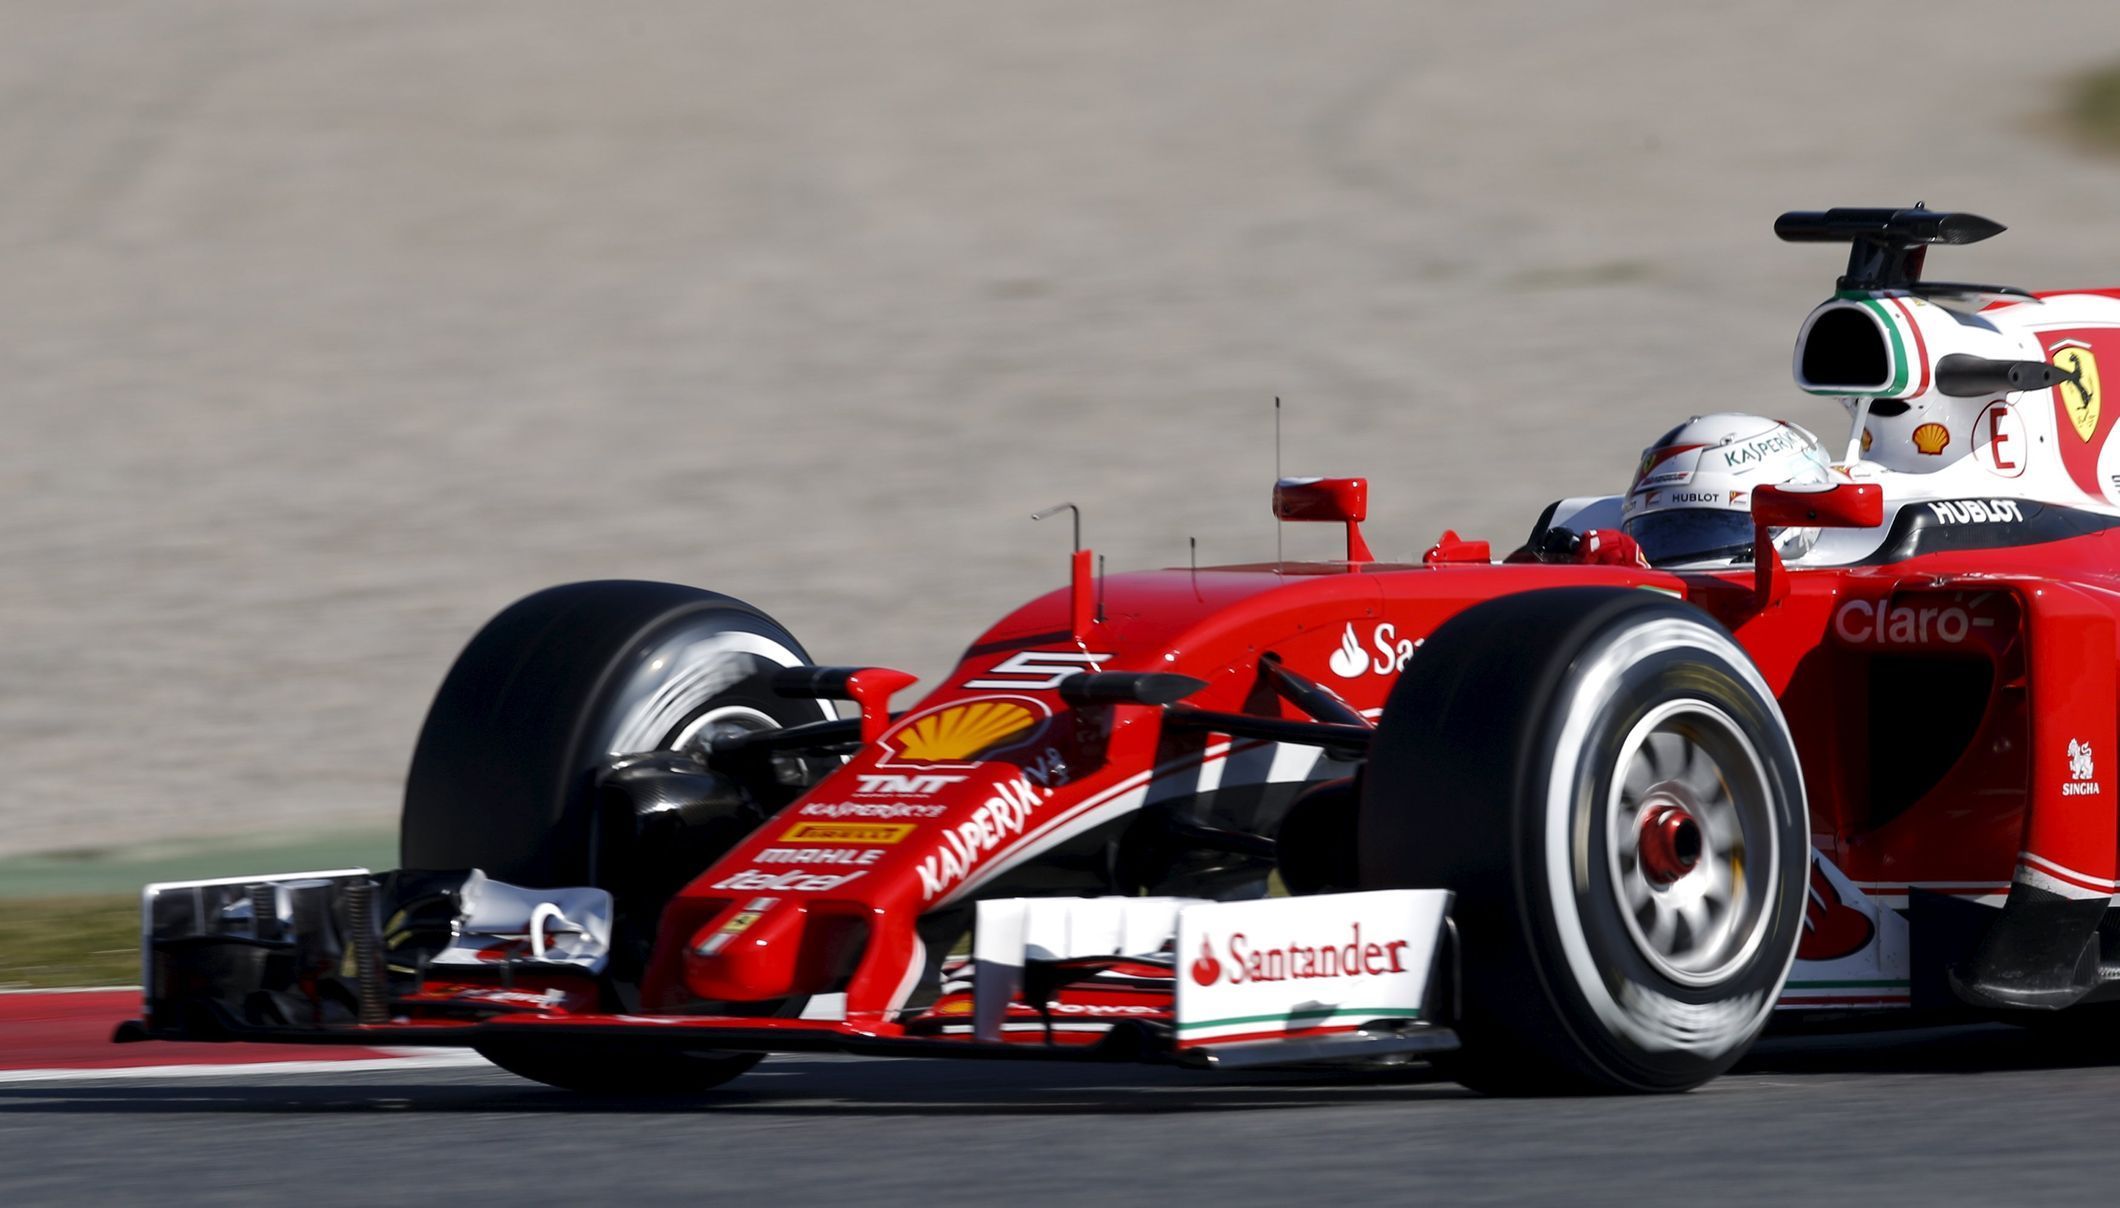 Testy F1 2016: Sebastian Vettel, Ferrari